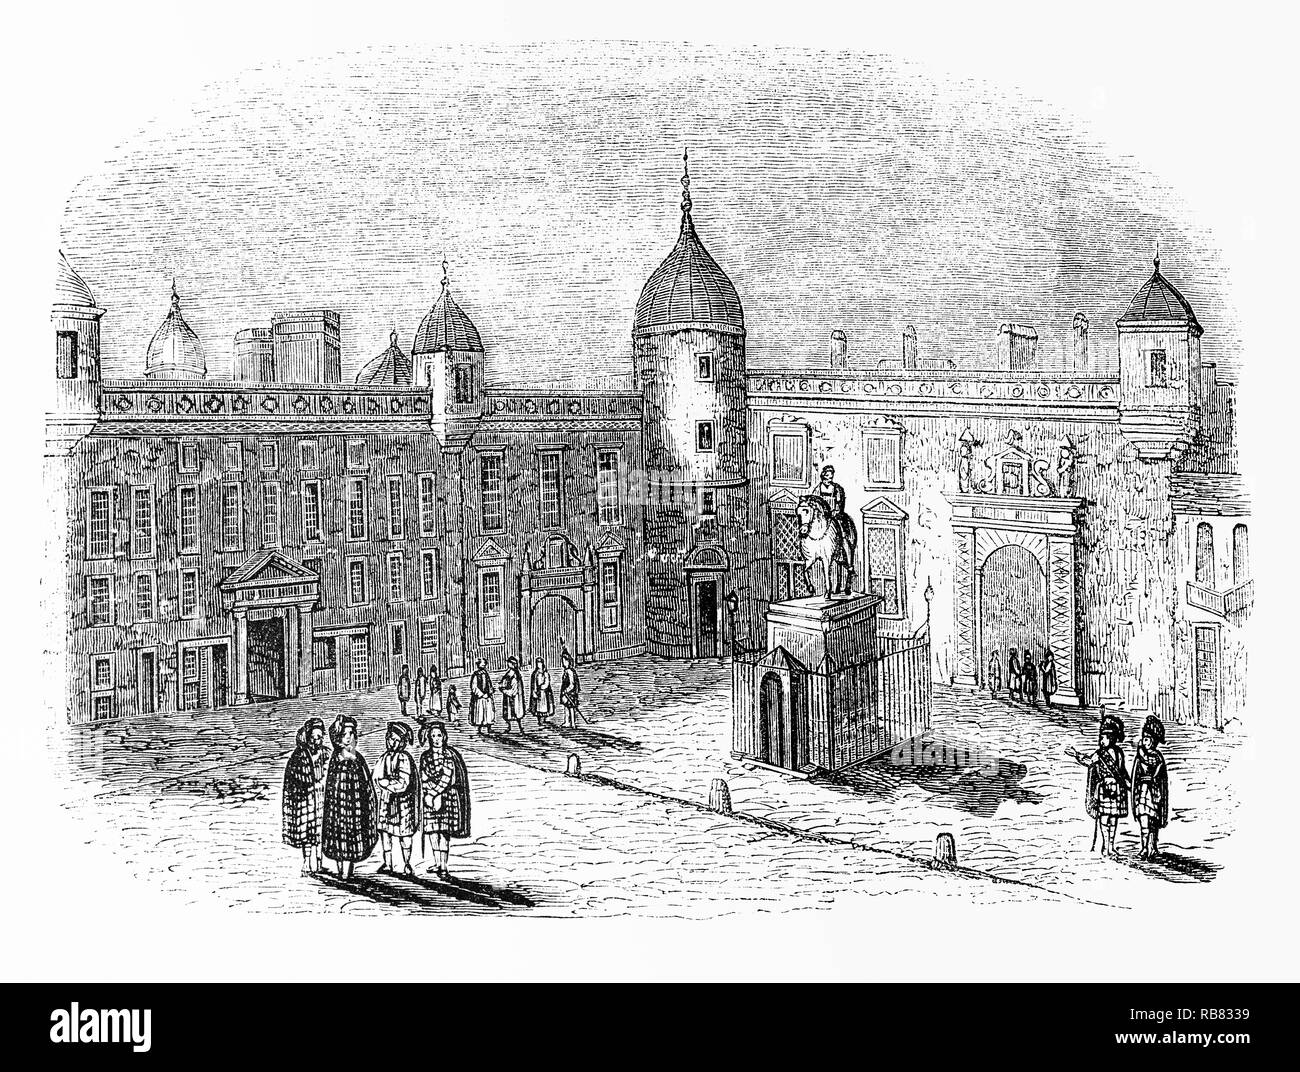 La Casa del Parlamento di Edimburgo, in Scozia, è rimasto a casa per il pre-Unione europea Il Parlamento della Scozia e si trova nella città vecchia, appena fuori dal Royal Mile, accanto alla Cattedrale di St Giles. Esso è stato completato nel 1639 per la progettazione di James Murray. Dopo l'Atto di unione 1707, il Parlamento della Scozia è stata interrotta, e l'edificio ha cessato di essere utilizzata per la sua funzione originale. La sala è stata utilizzata per la seduta di tribunali, ma negli ultimi tempi è stata oggetto di lavori di restauro e ora rimane aperto come un luogo di incontro per gli avvocati. Foto Stock